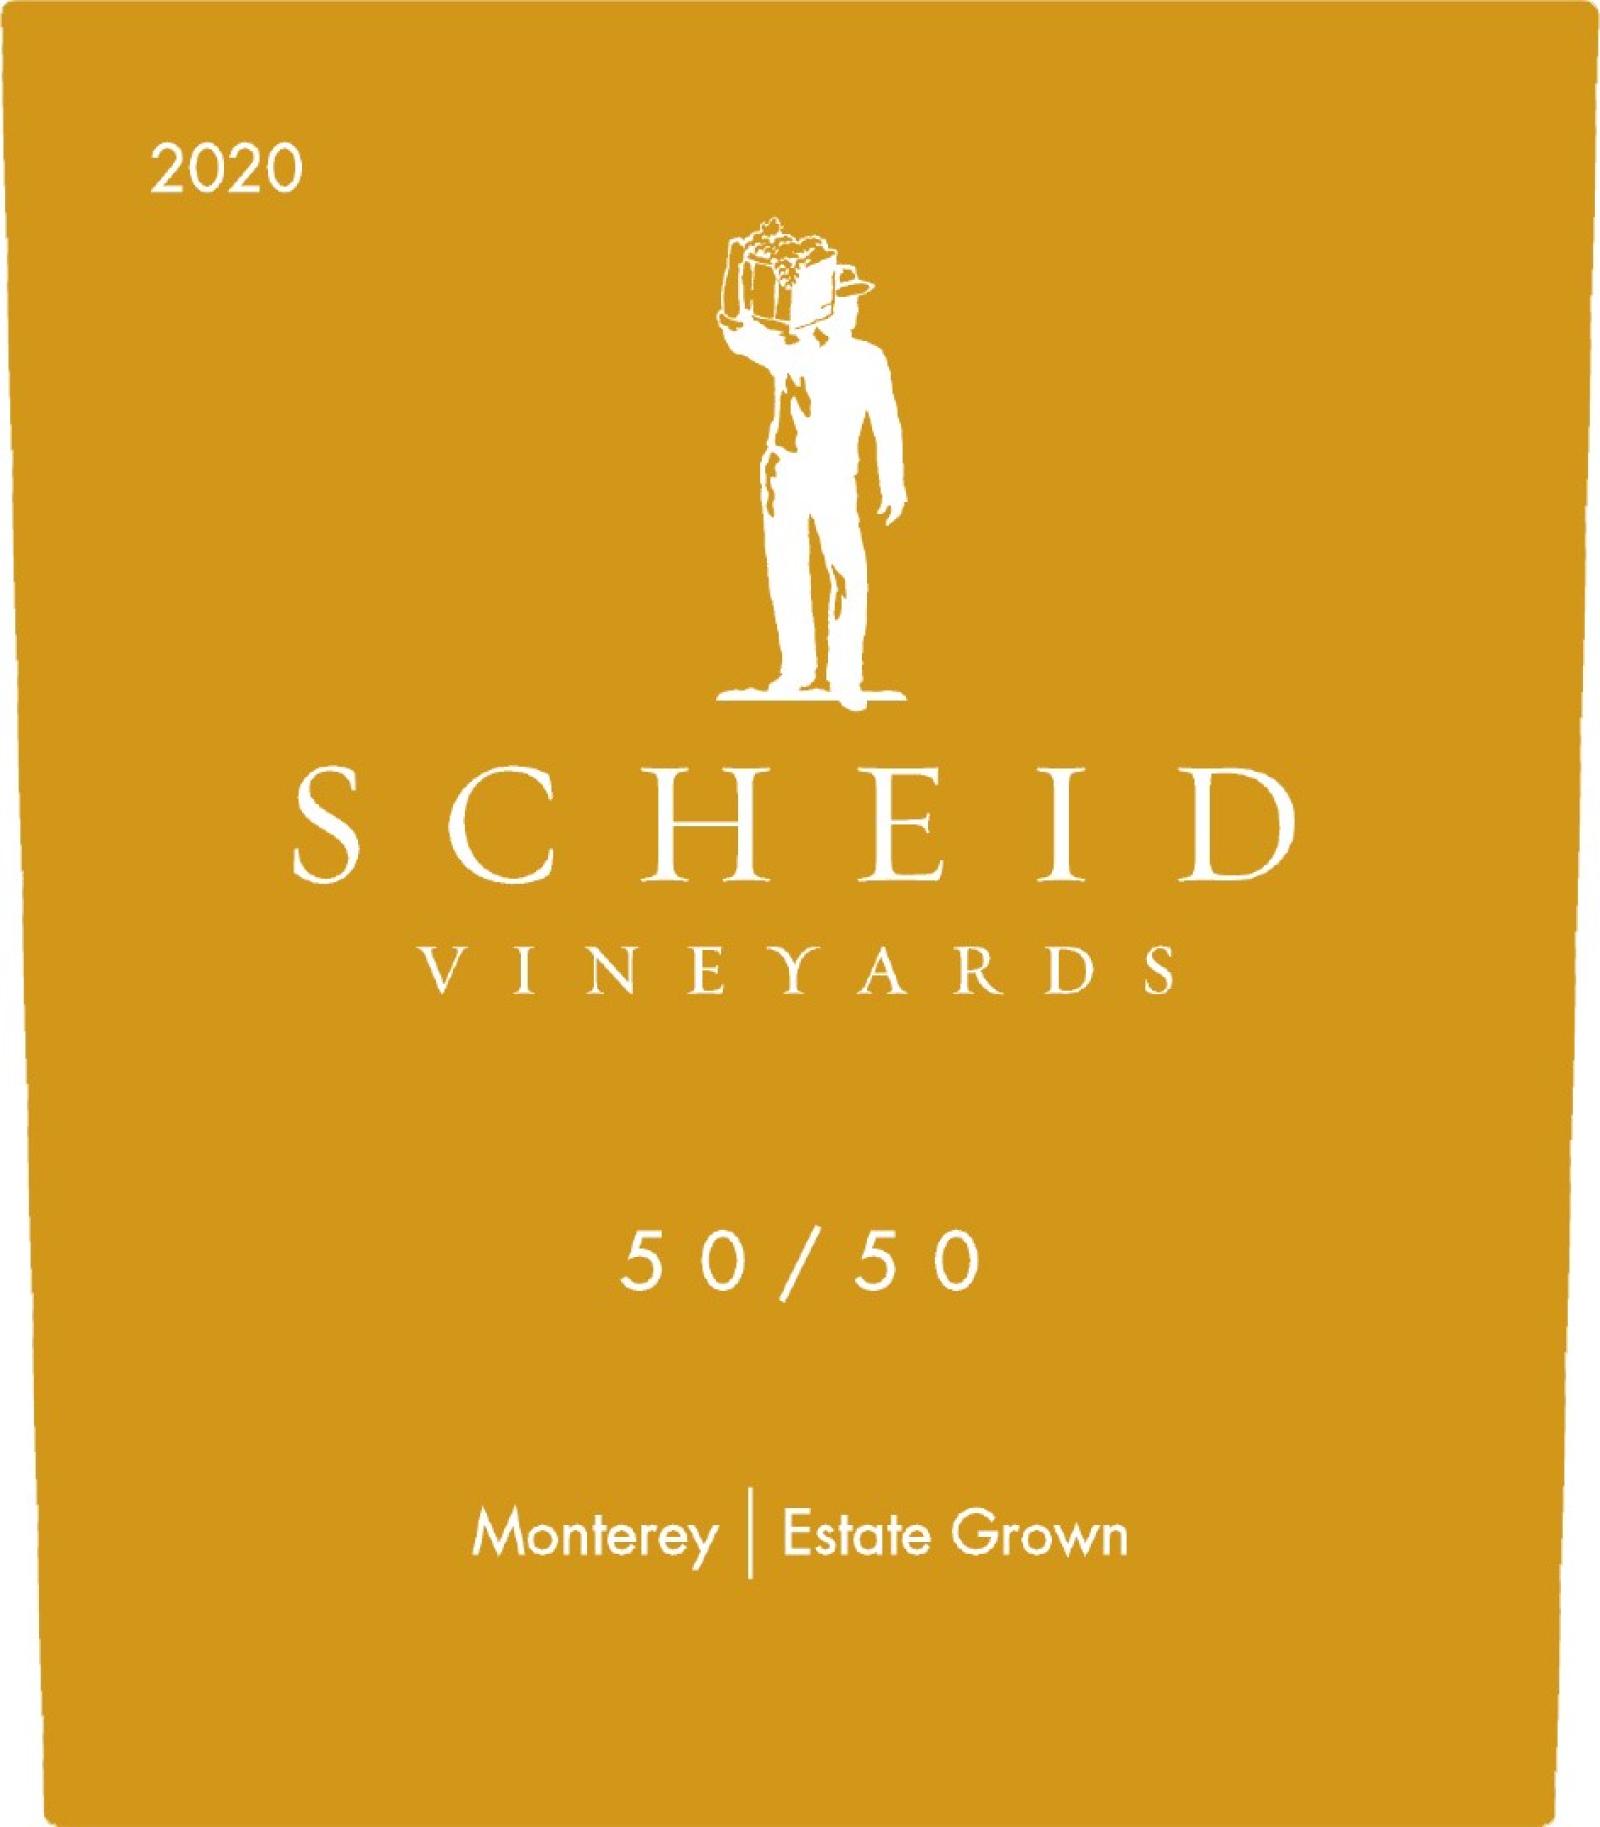 50/50 Scheid Vineyards